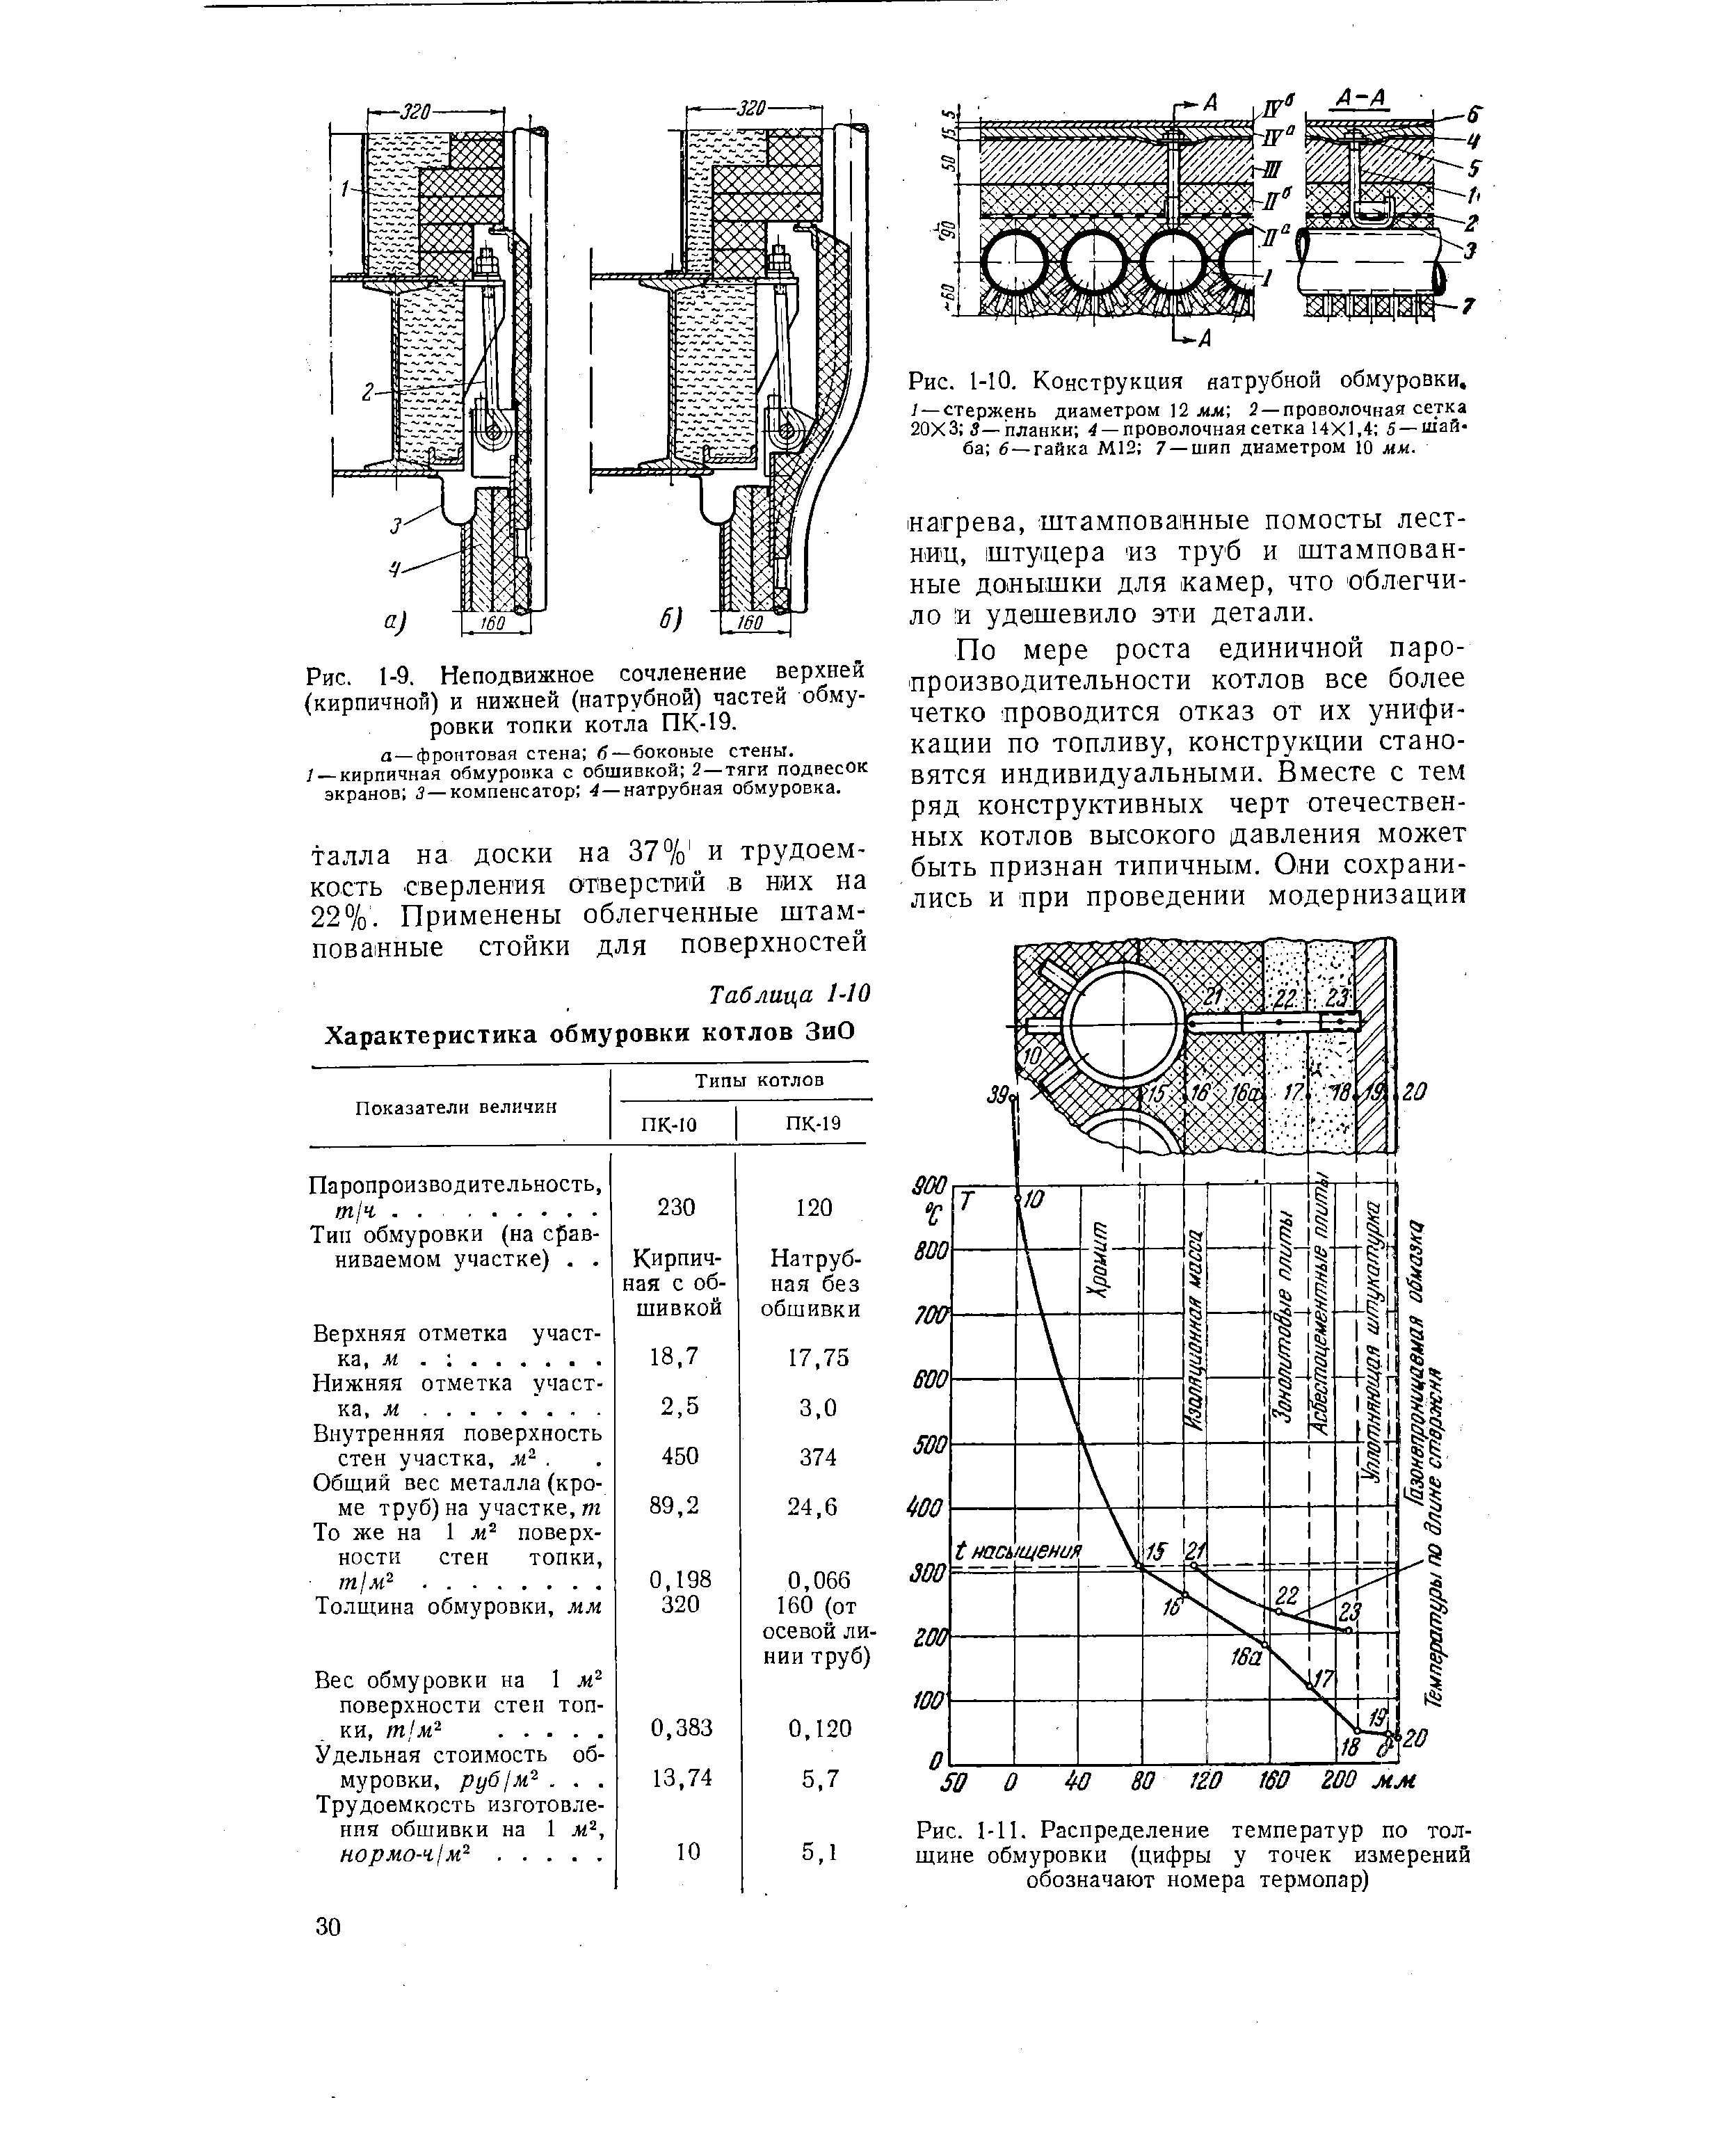 Рис. 1-9, Неподвижное сочленение верхней (кирпичной) и нижней (натрубной) частей обмуровки топки котла ПК-19.
